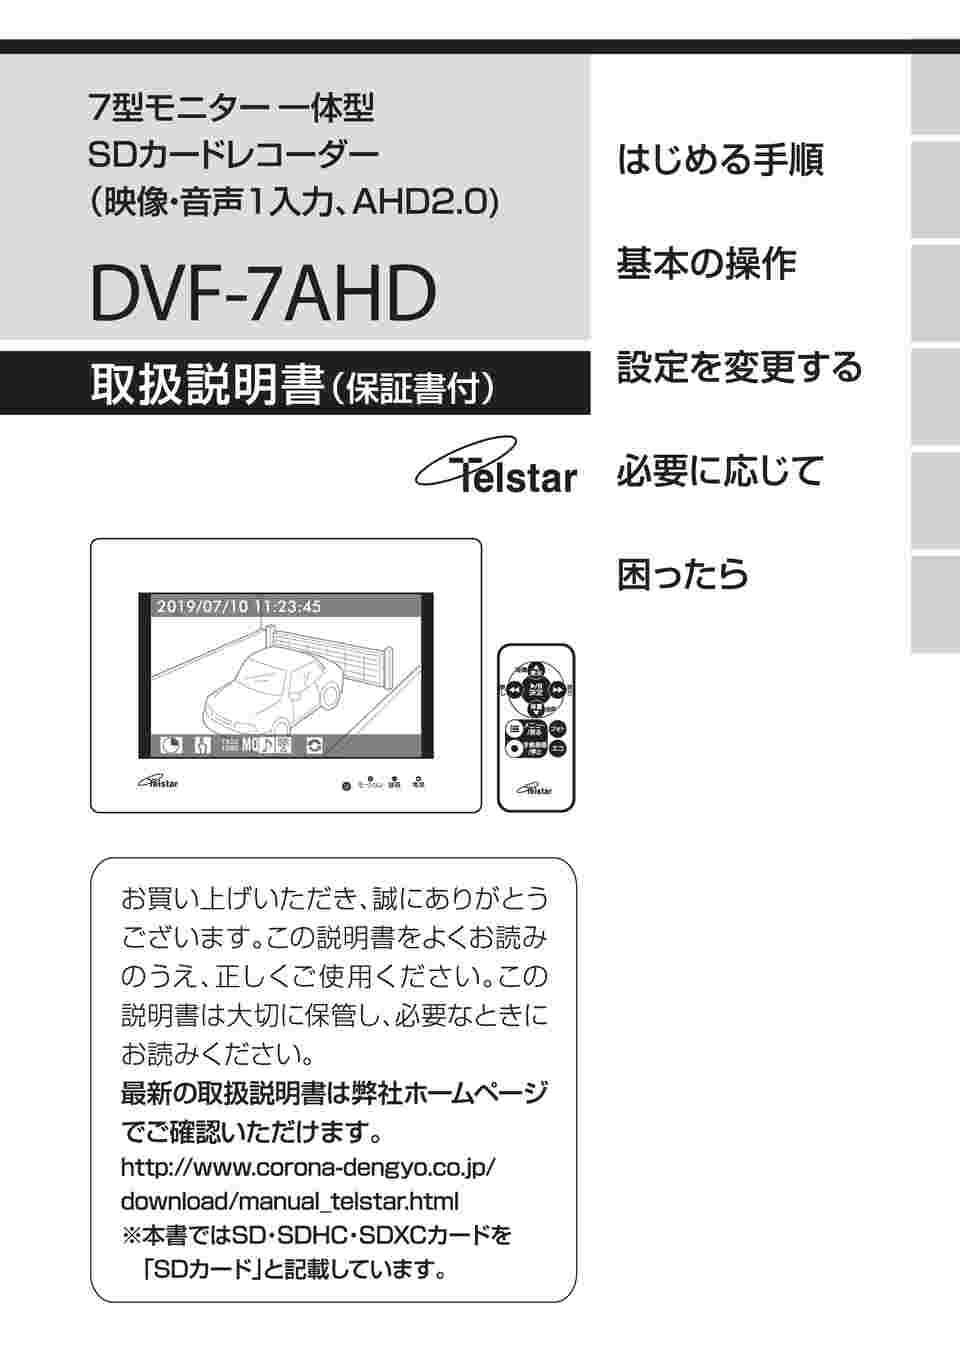 半価特販コロナ電業 7型モニター一体型SDカードレコーダー DVF-7AHD ホワイト その他